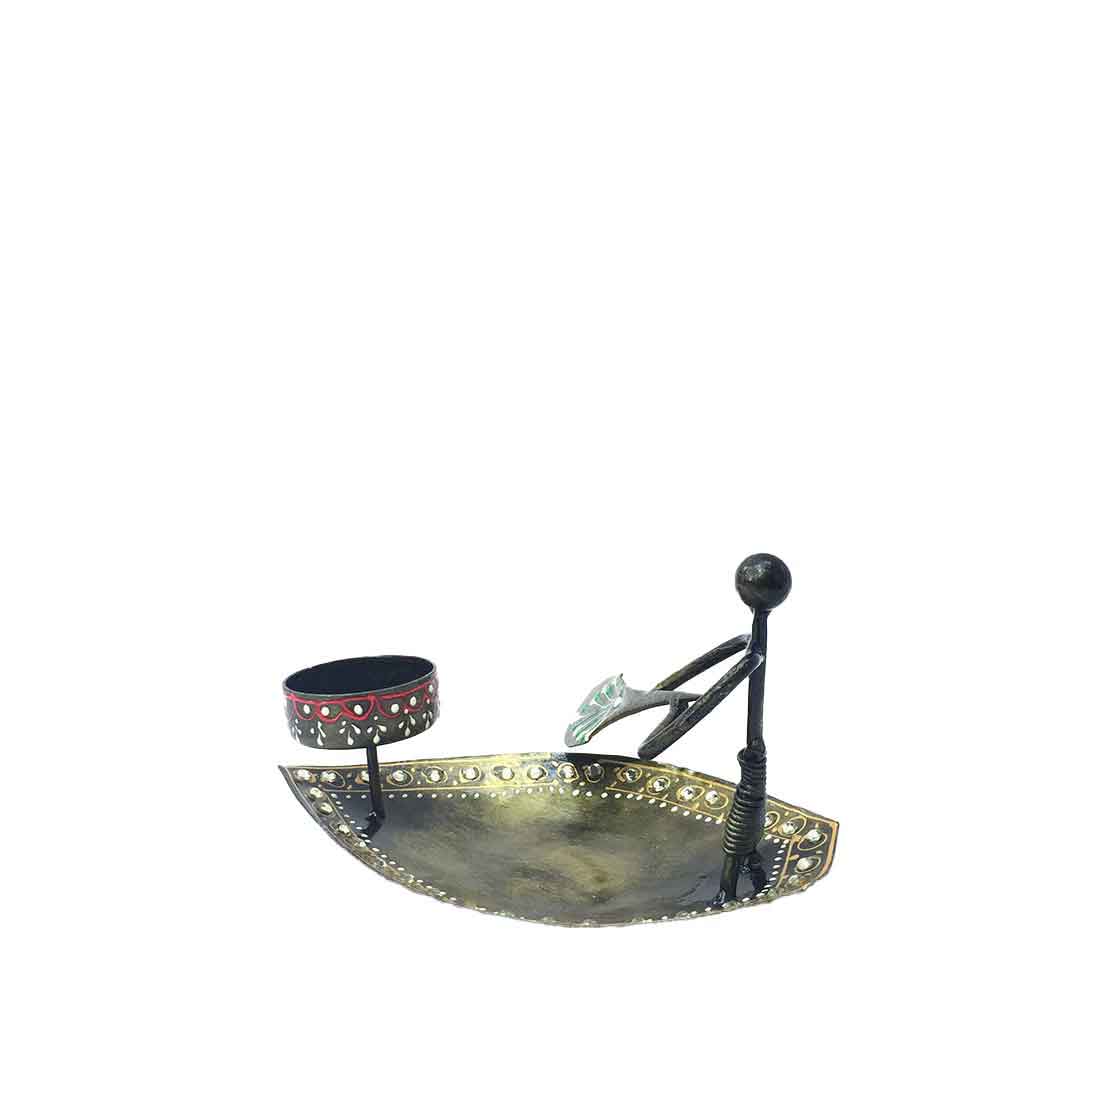 Tea Light Holder - Decorative Candle Holder Boat Design - For Home Decor & Gifts - 4 Inch - ApkaMart